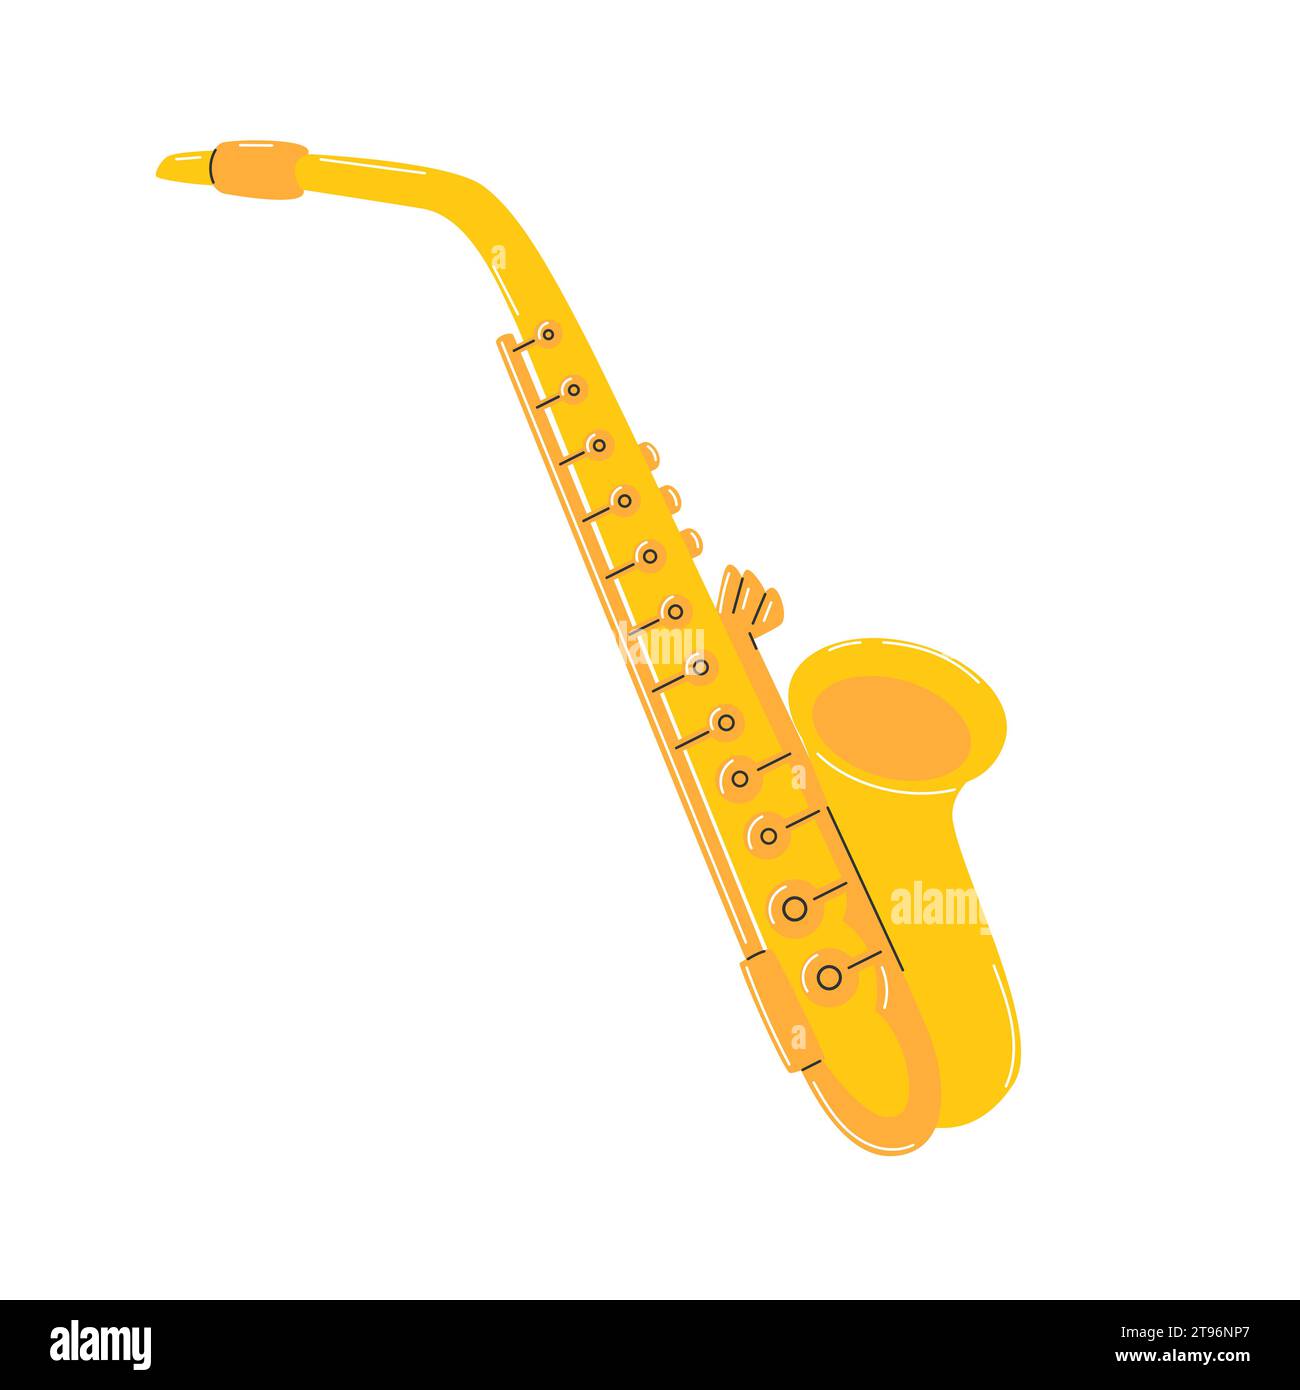 Saxophone jaune. Instrument de musique à vent. Simple clipart dessiné à la main. Illustration vectorielle plate isolée sur un fond blanc Illustration de Vecteur